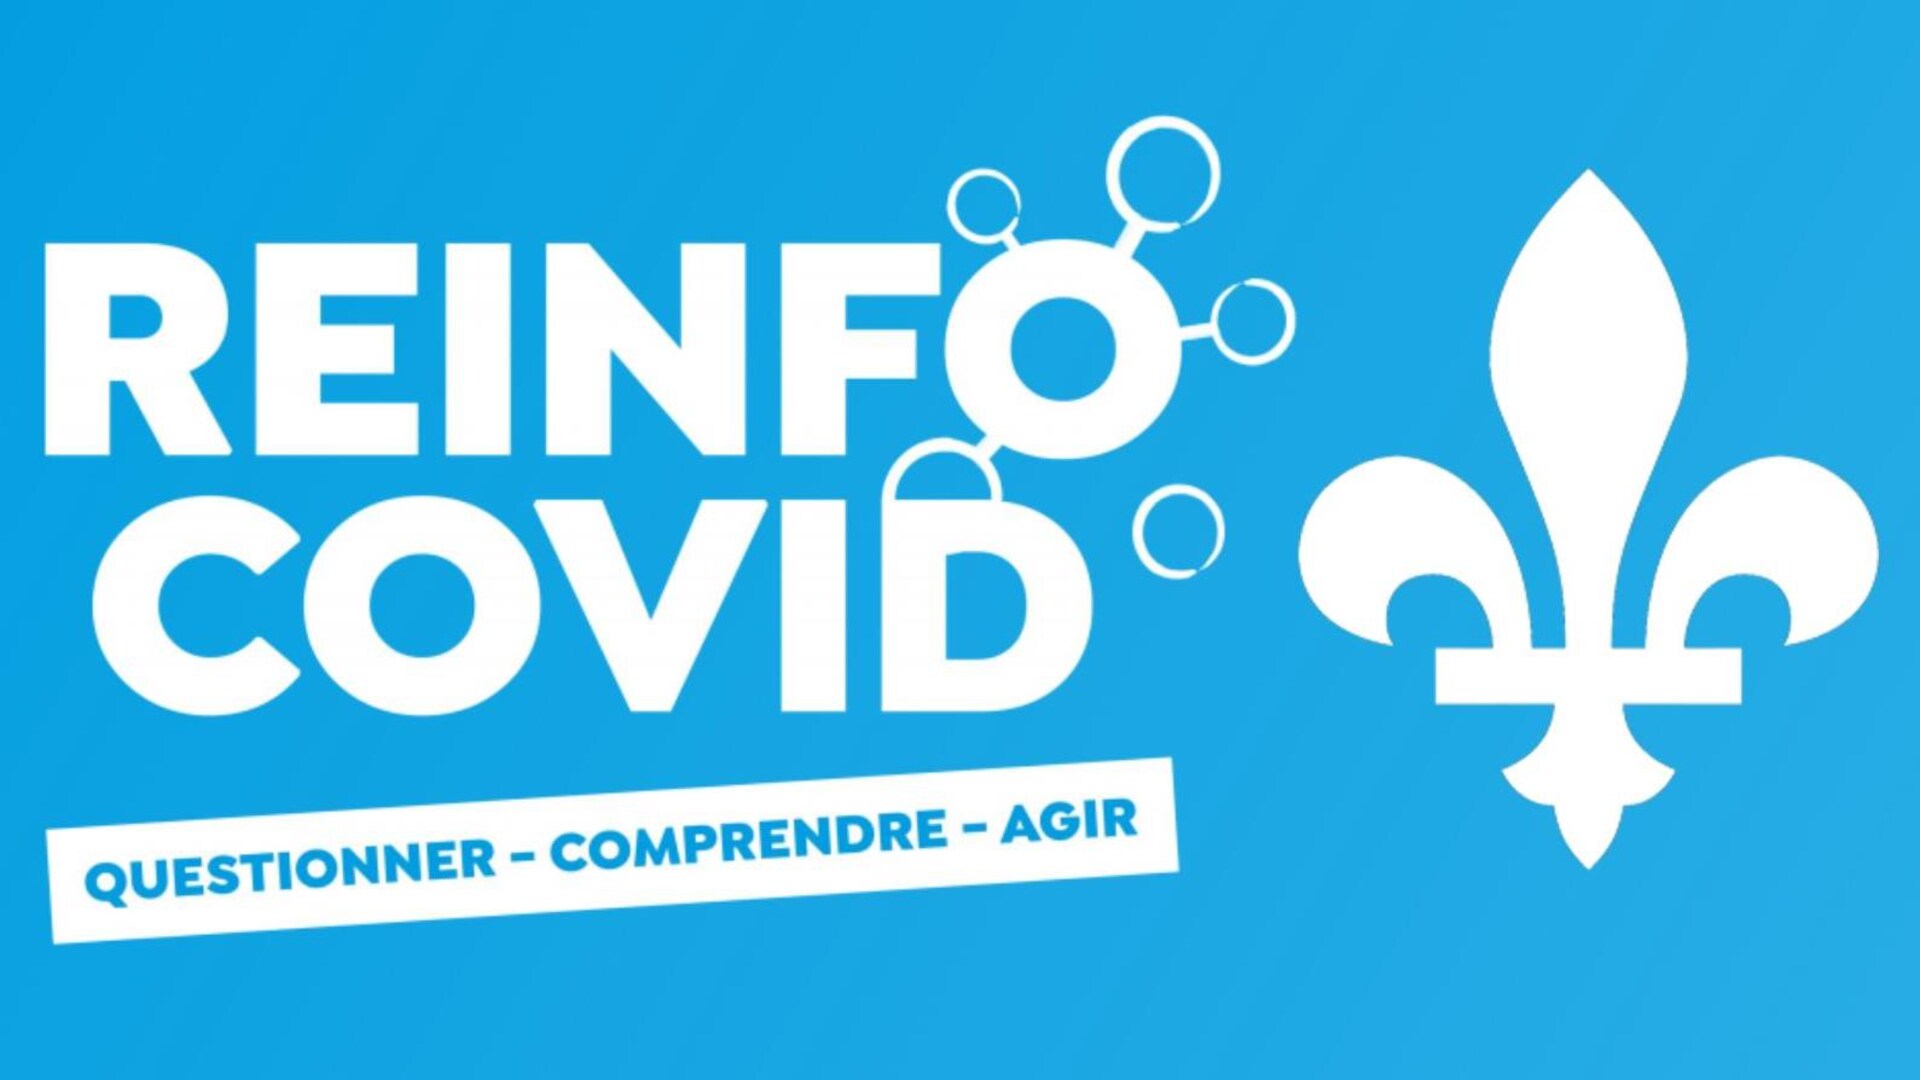 Le logo de Réinfo Covid Québec. Il est écrit « Réinfo Covid » avec le sous-titre « Questionner, comprendre, agir », sur un fond bleu. Il y a également une fleur de lys.